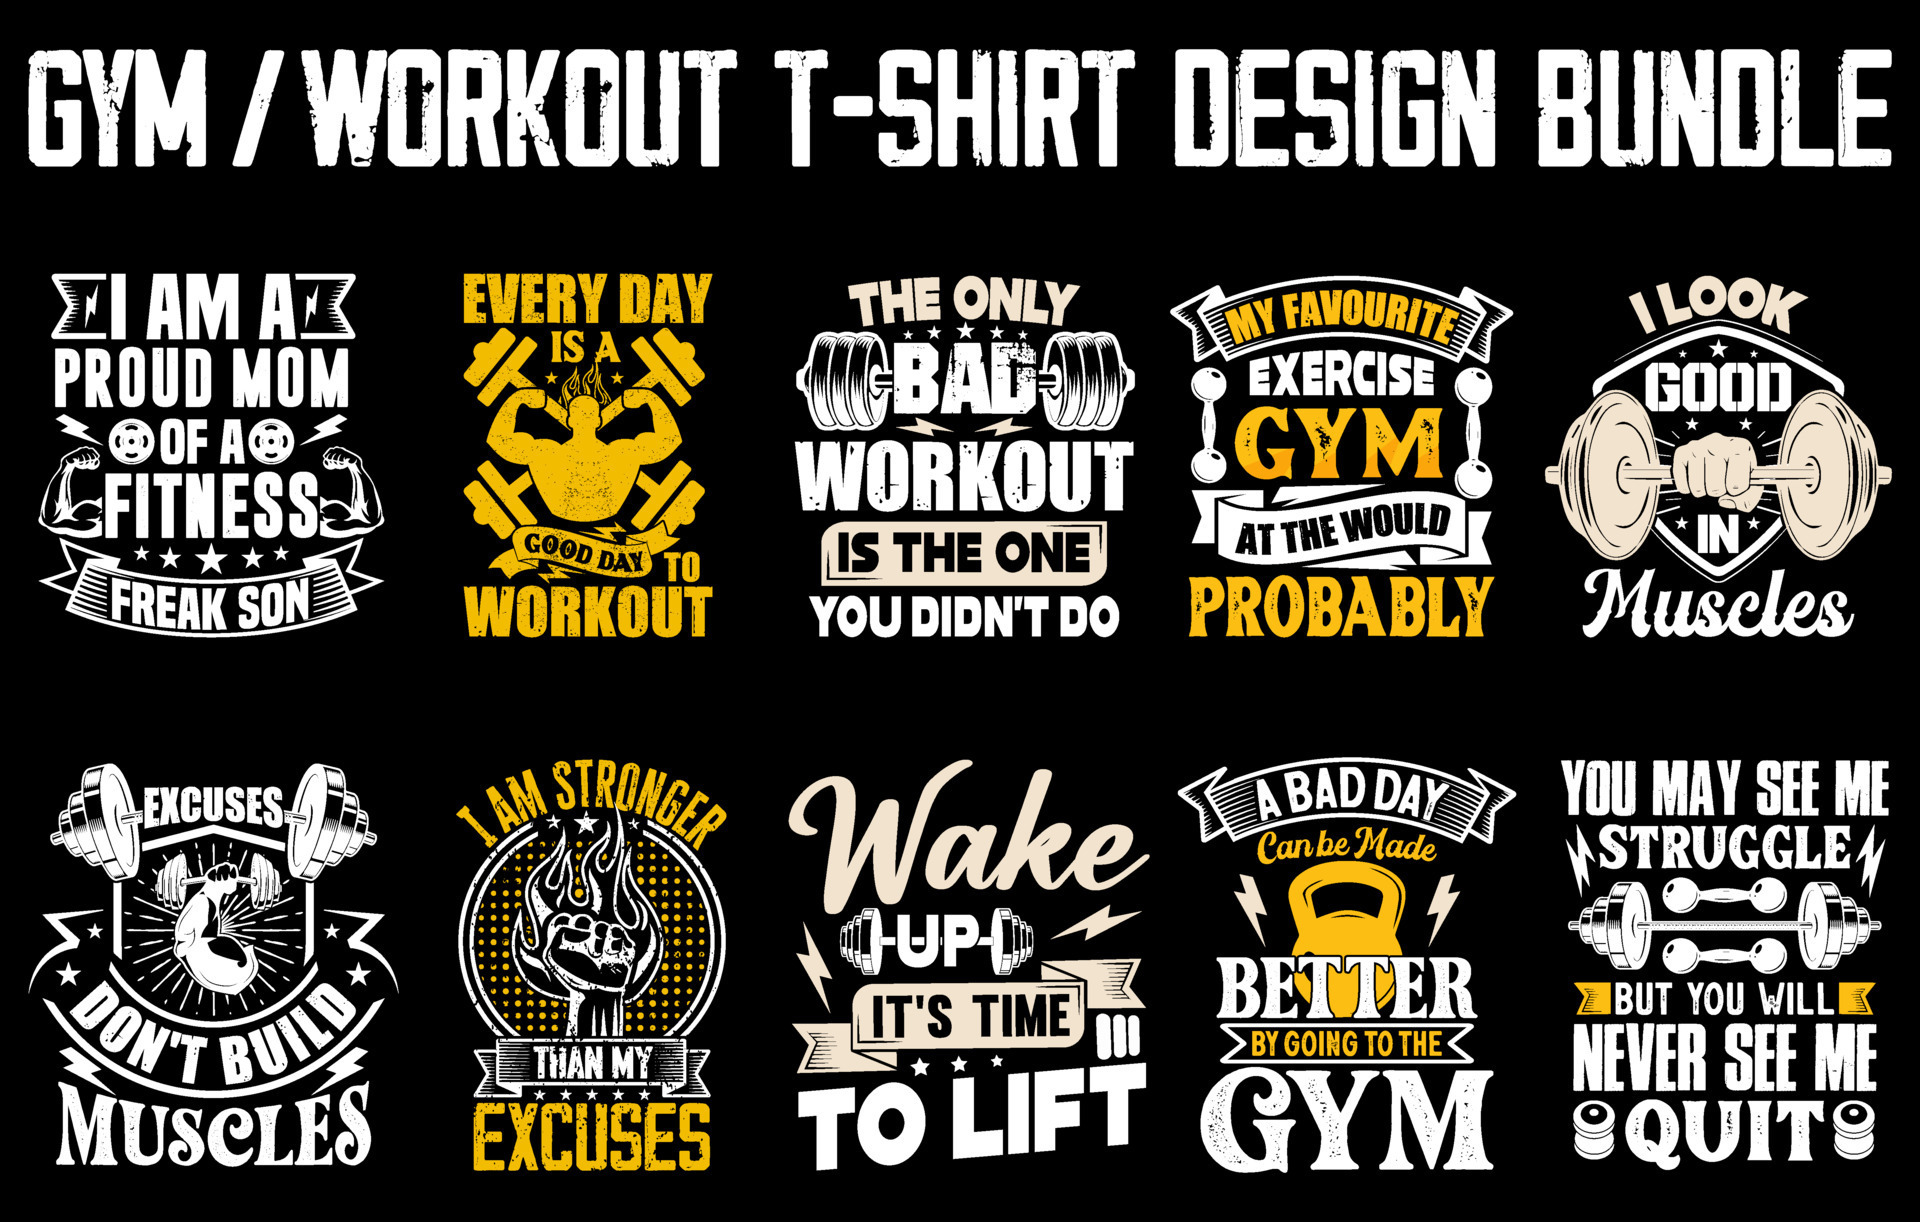 T shirt design Bundle, Gym motivational quote, inspirational shirt design, Fitness t shirt design 14561772 Vector Art at Vecteezy